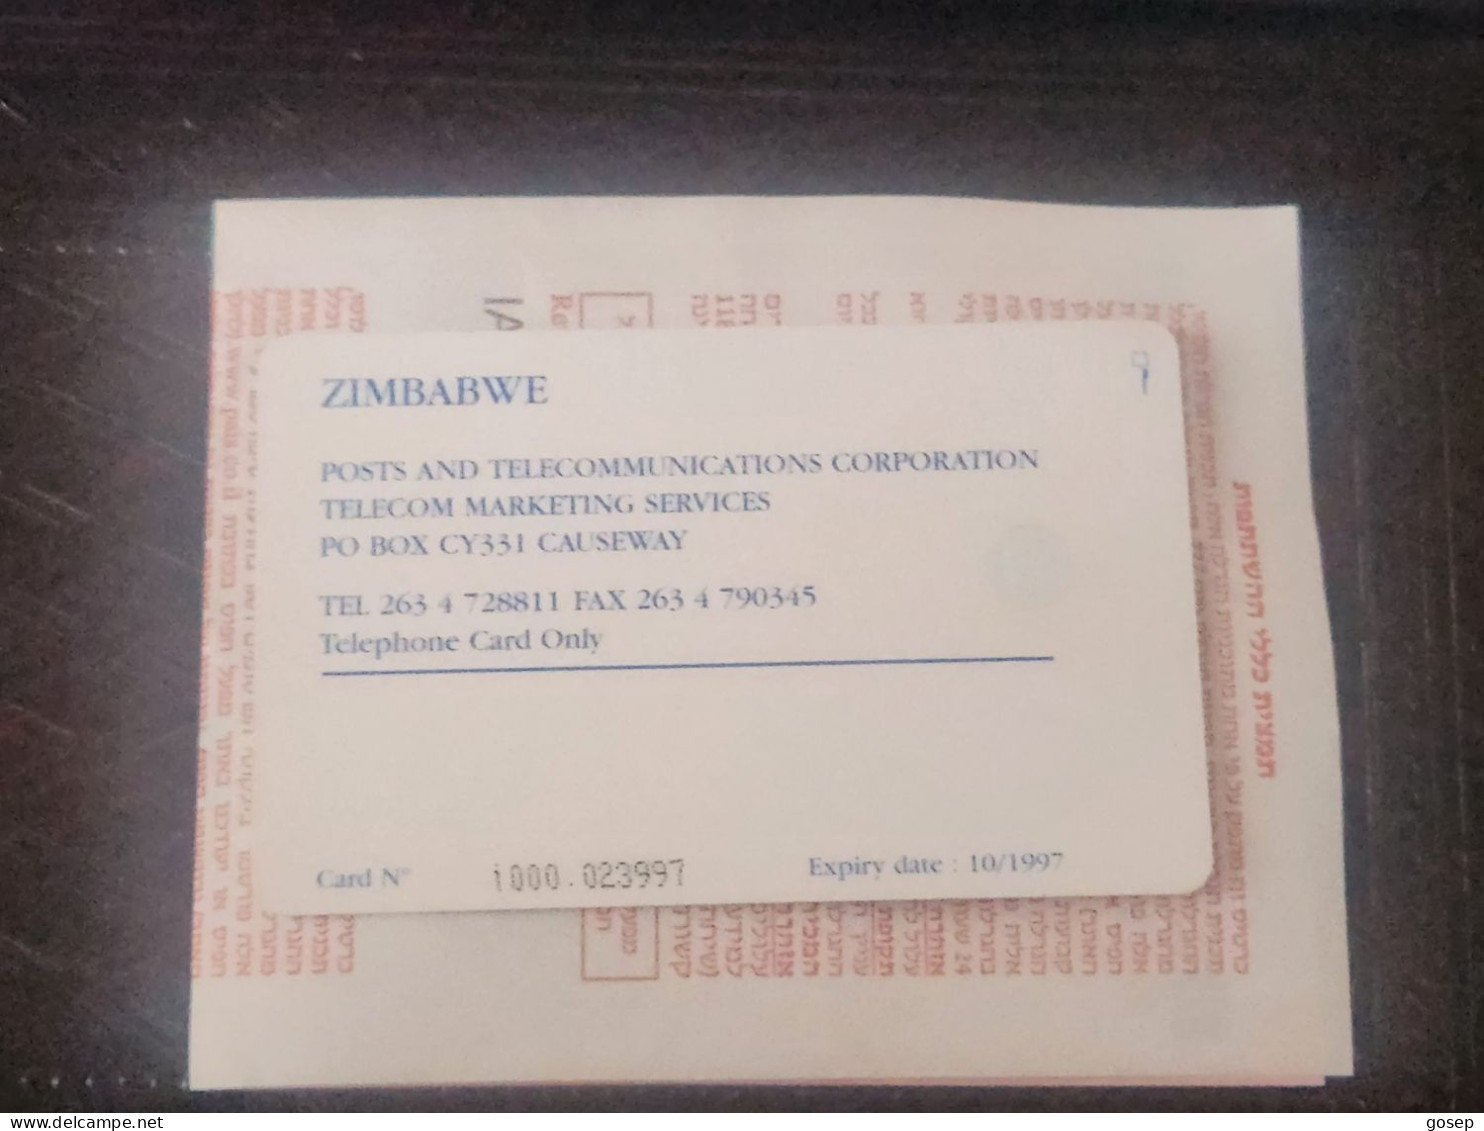 Zimbabwe-(ZIM-01)-cone Shaped Building-(81)-($30)-(1000-023997)-(10/97)(tirage-25.000)-used Card+1card Free - Zimbabwe